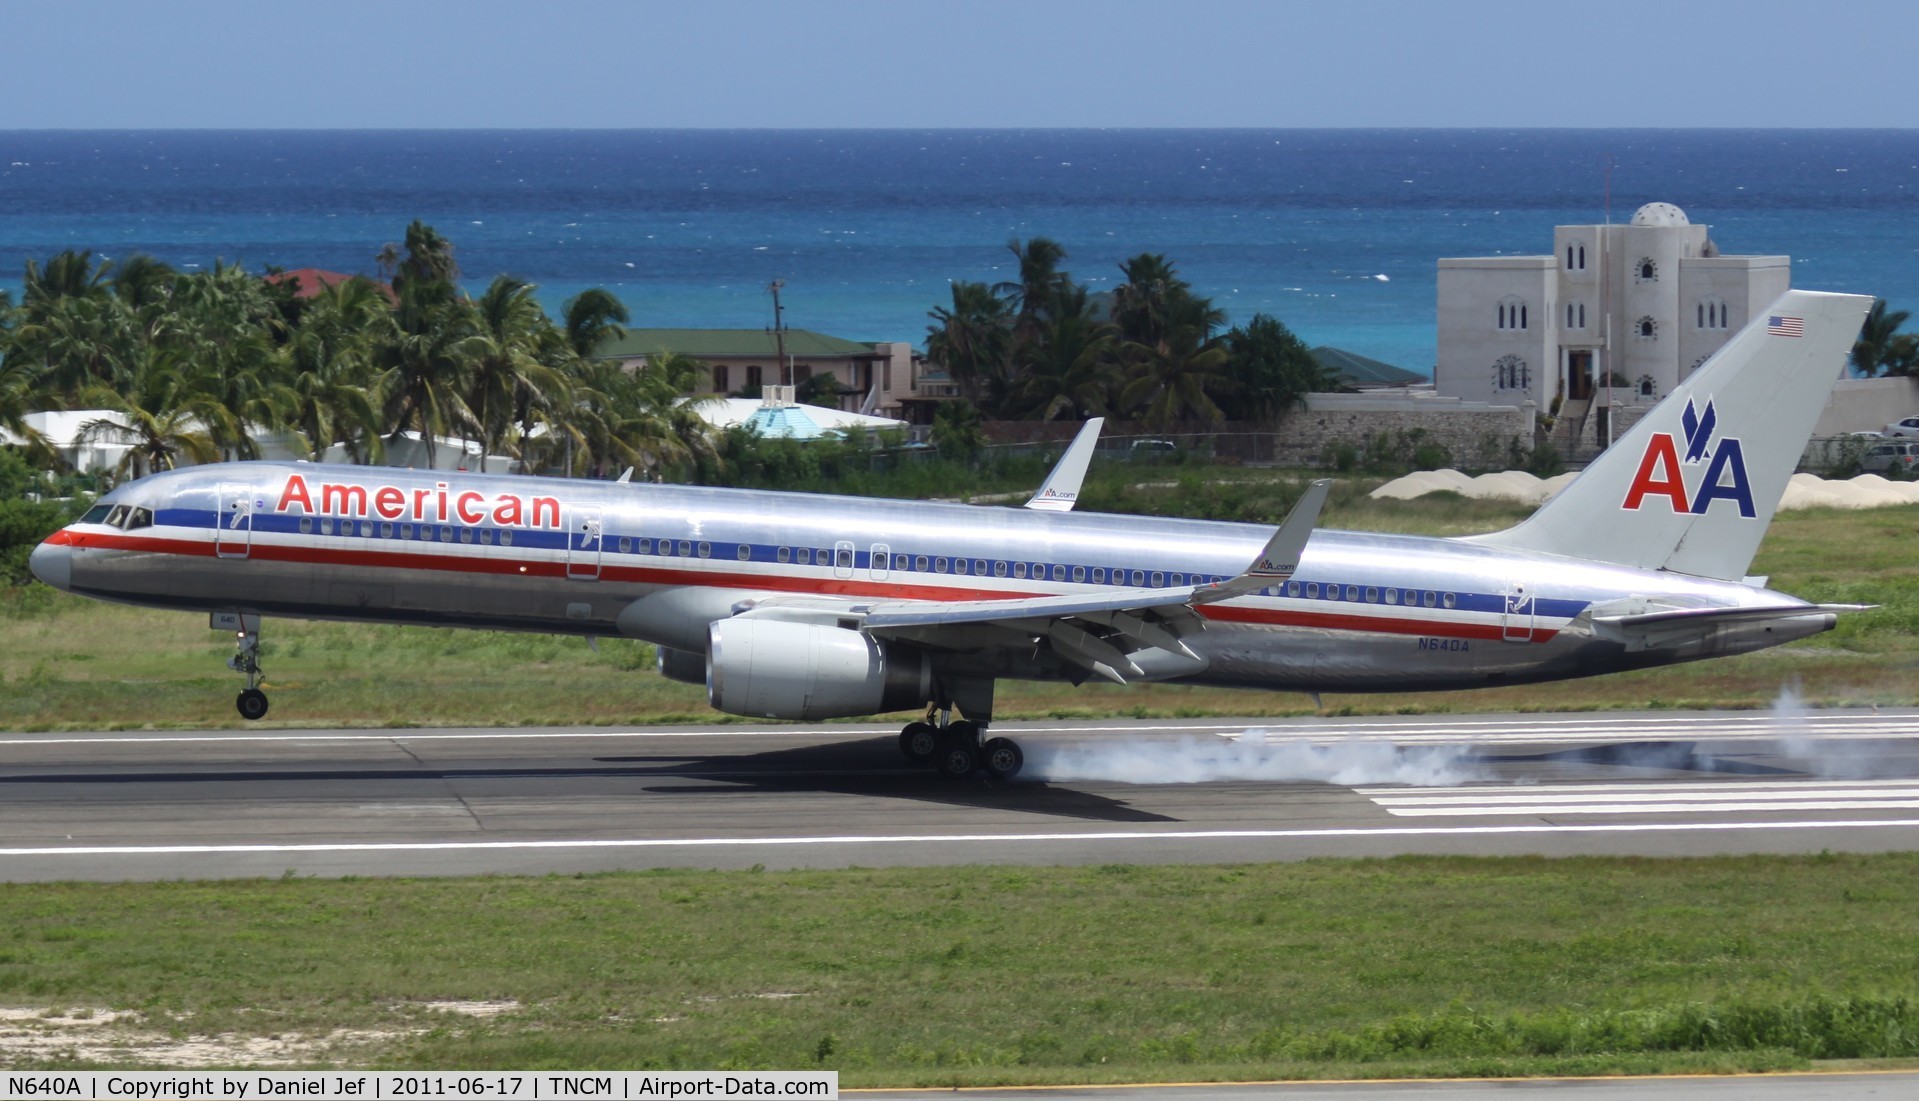 N640A, 1991 Boeing 757-223 C/N 24598, American airlines landing at TNCM